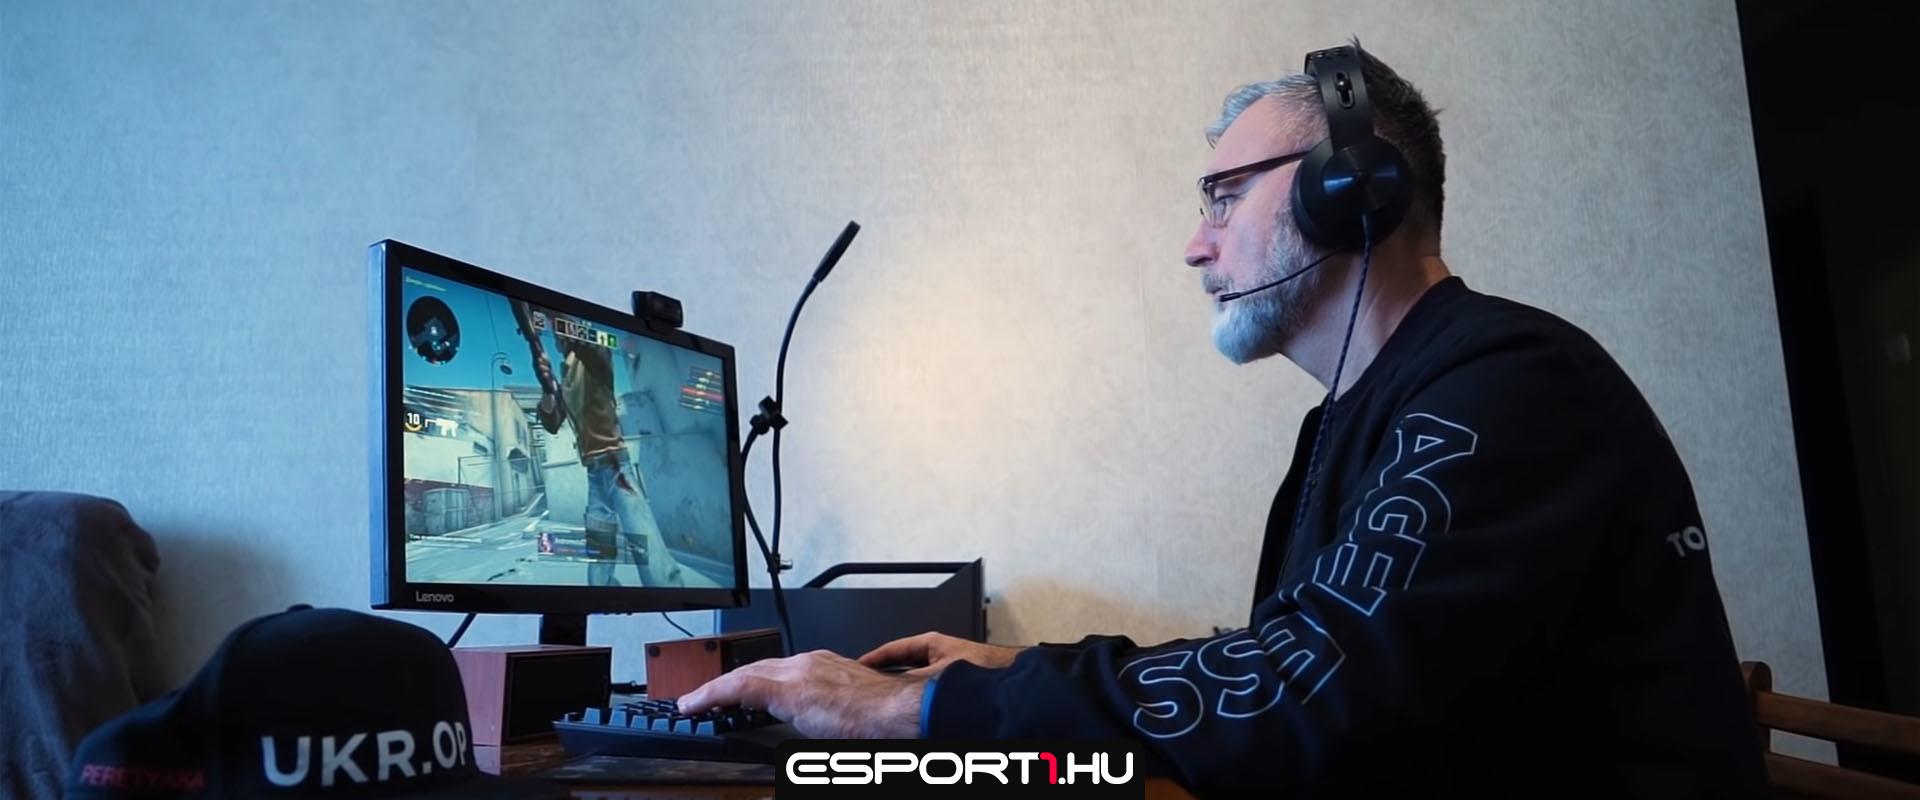 Ismerjétek meg a 63 éves ukrán CS:GO játékost, aki versenyekre is jár